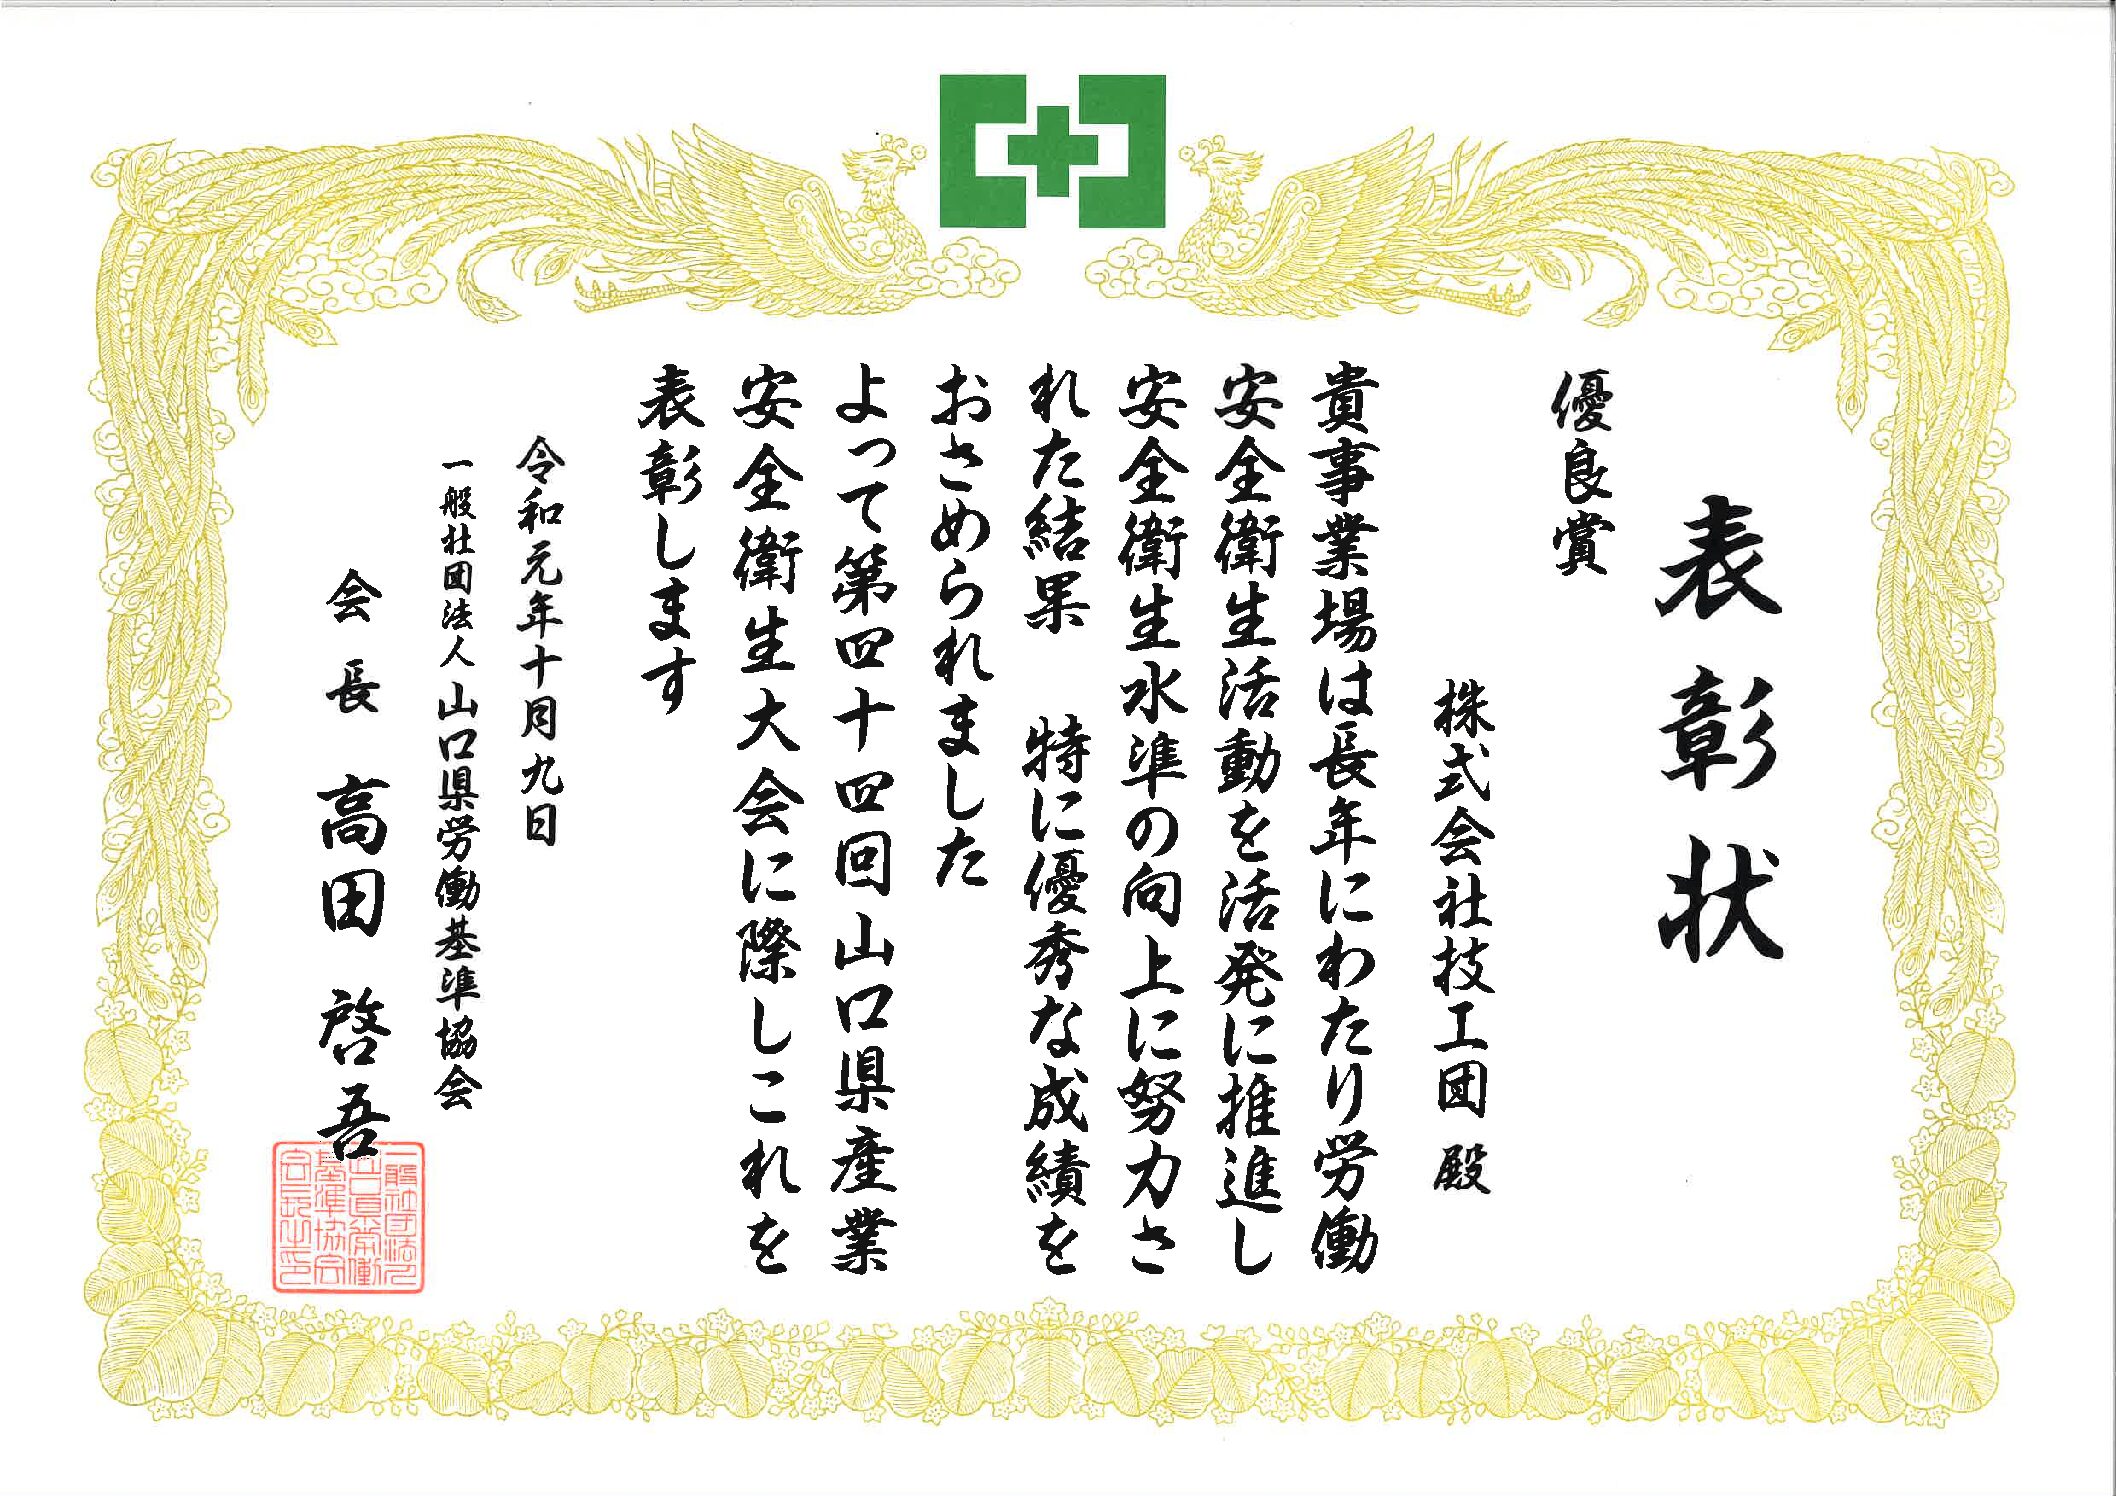 山口県労働基準協会より表彰状をいただきました。